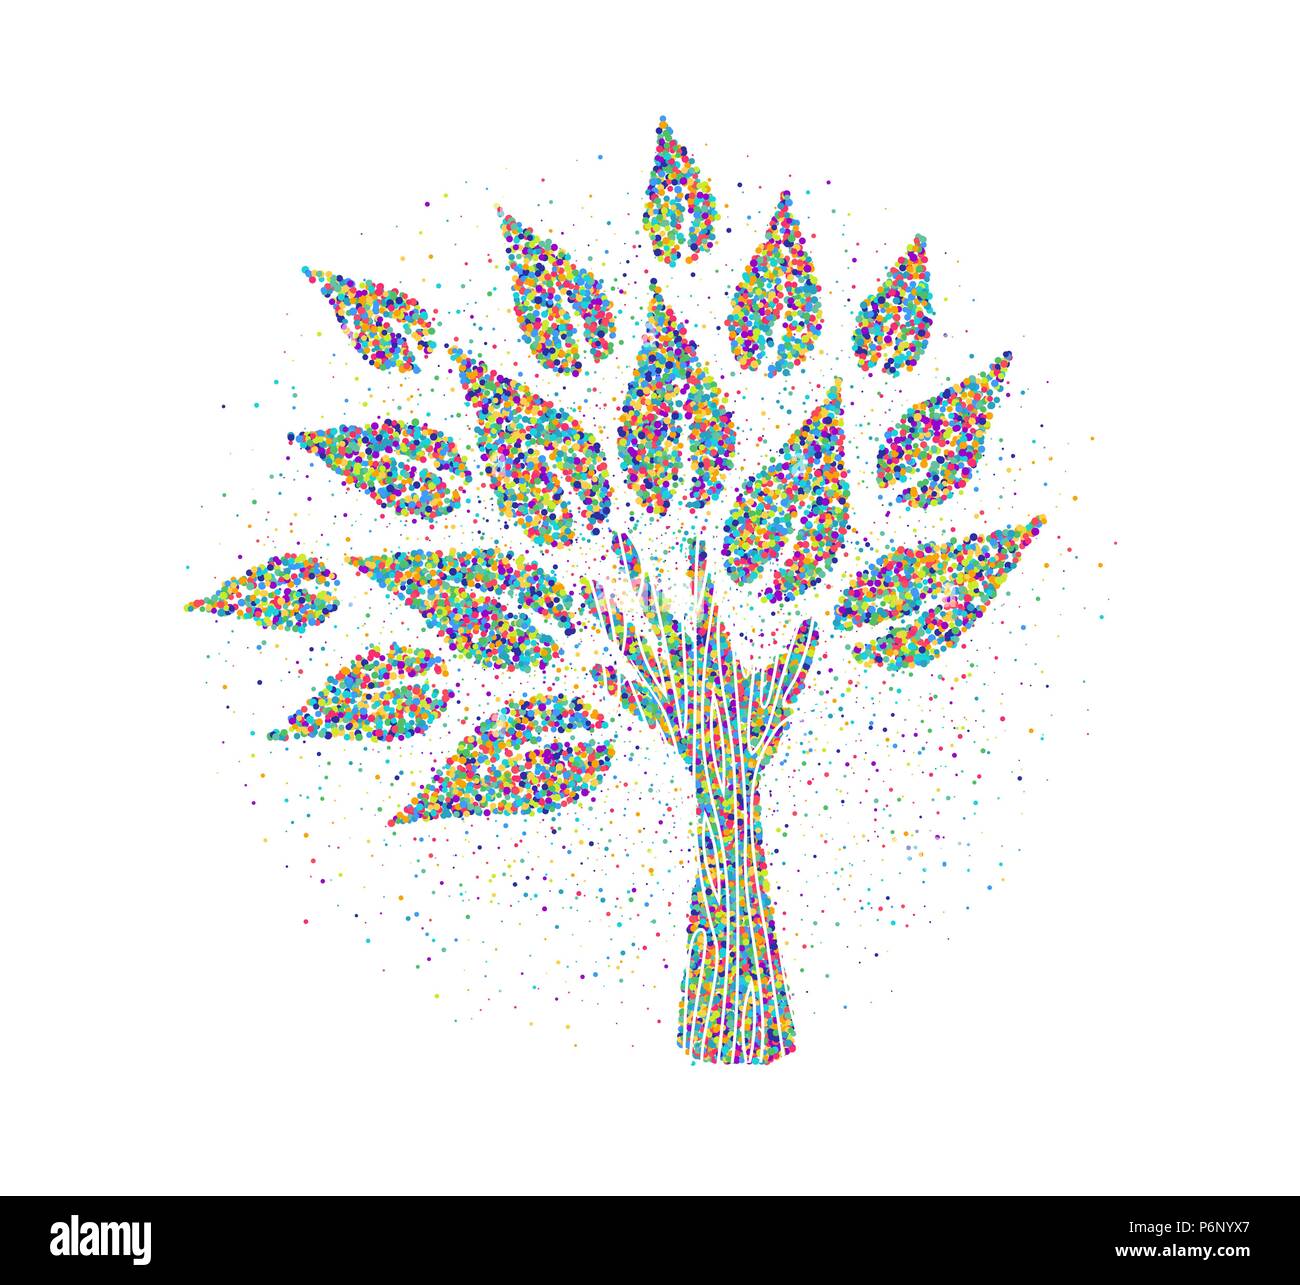 Baum aus menschlichen Händen in Farbe splash Partikel. Community Hilfe Konzept oder soziales Projekt. EPS 10 Vektor. Stock Vektor